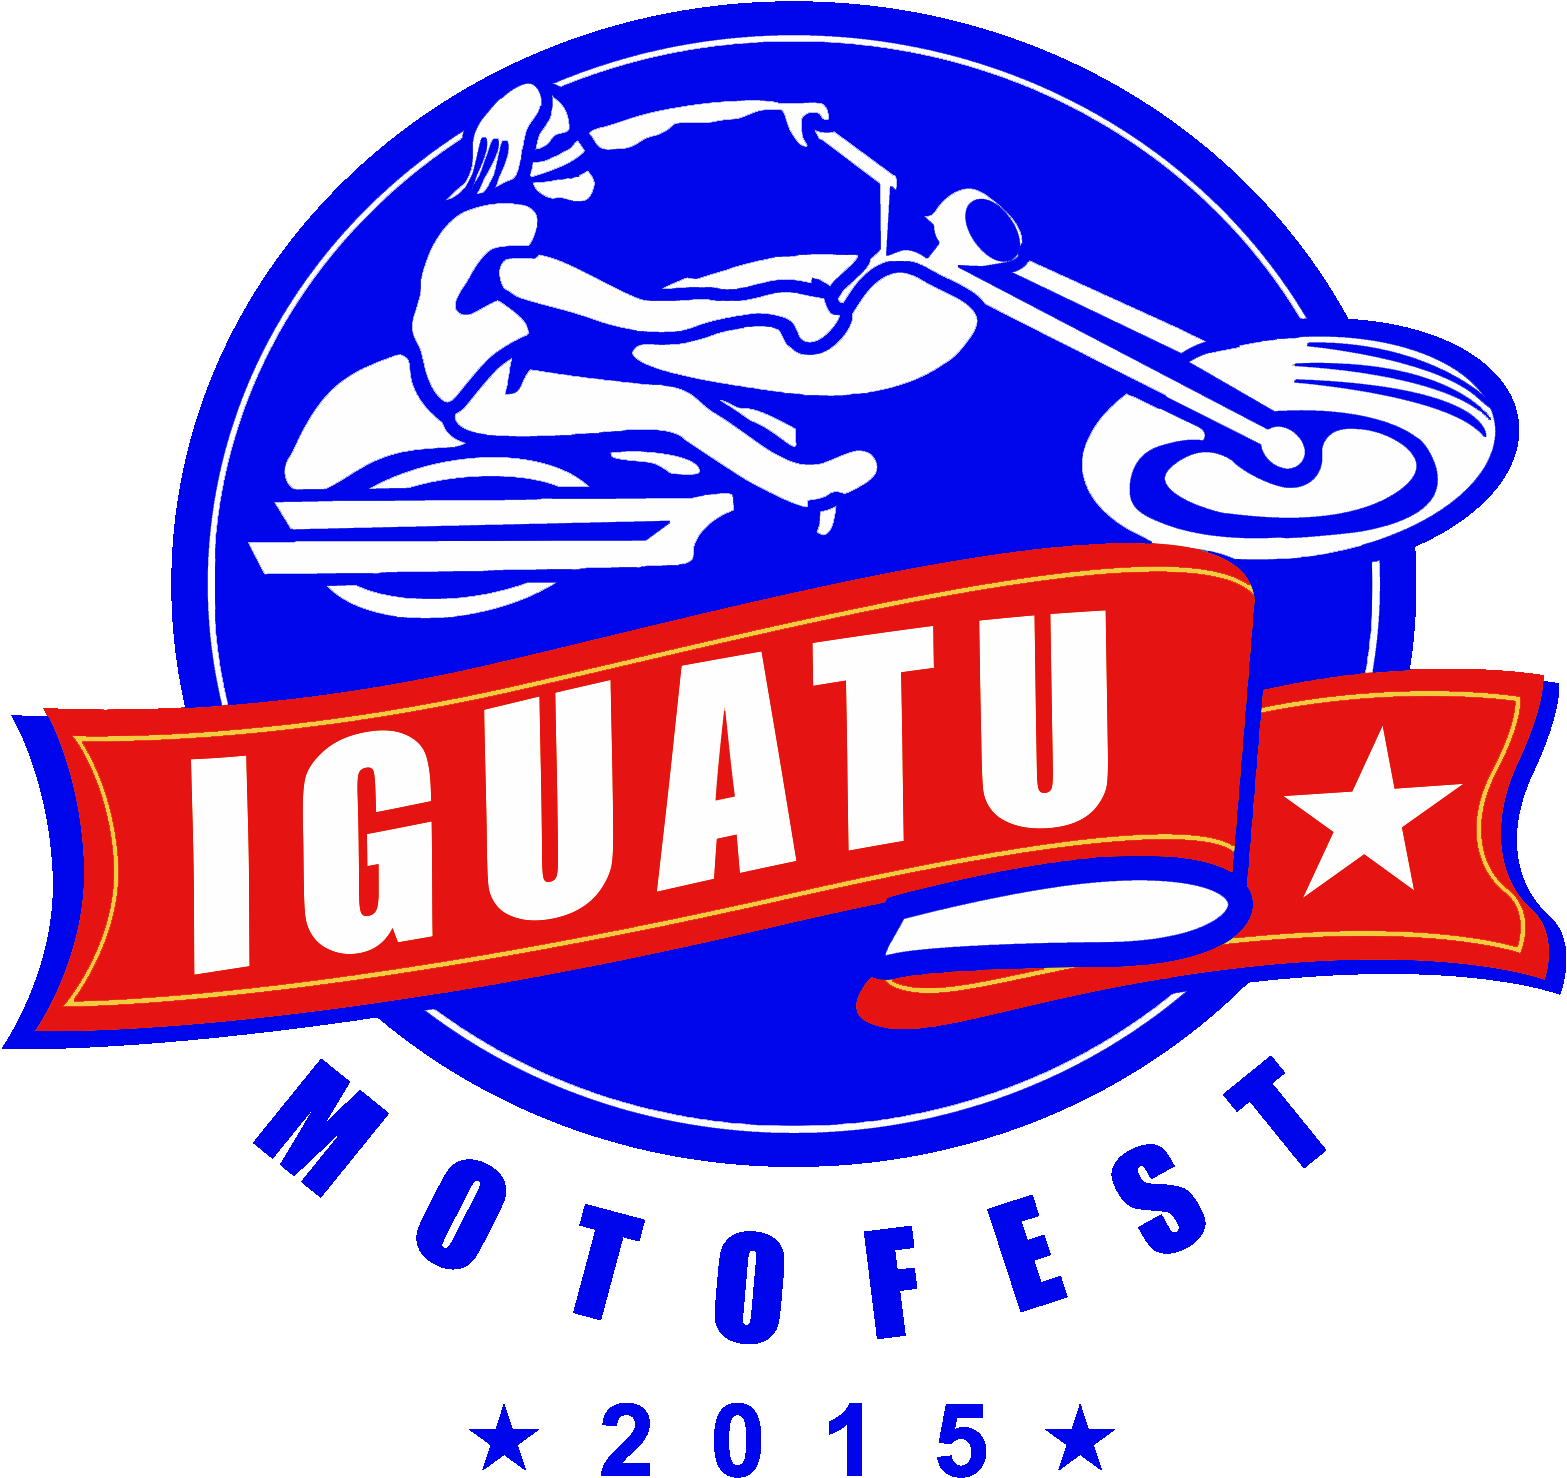 IGUATU MOTO FEST 2015 – AGENDE!